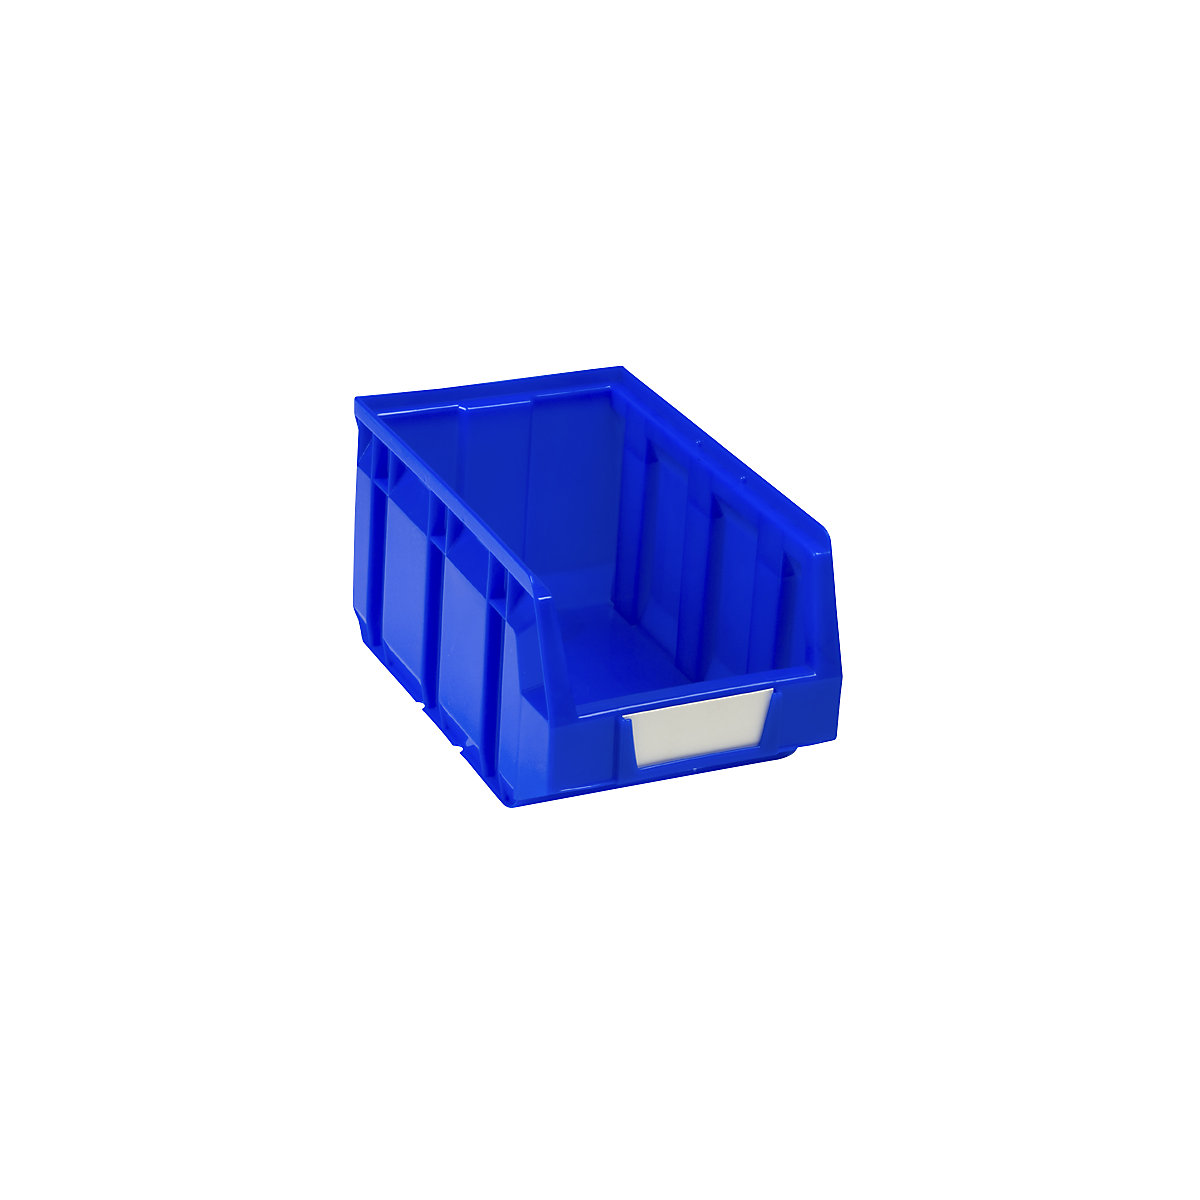 Sichtlagerkasten aus Polyethylen, LxBxH 237 x 144 x 123 mm, blau, VE 38 Stk-10